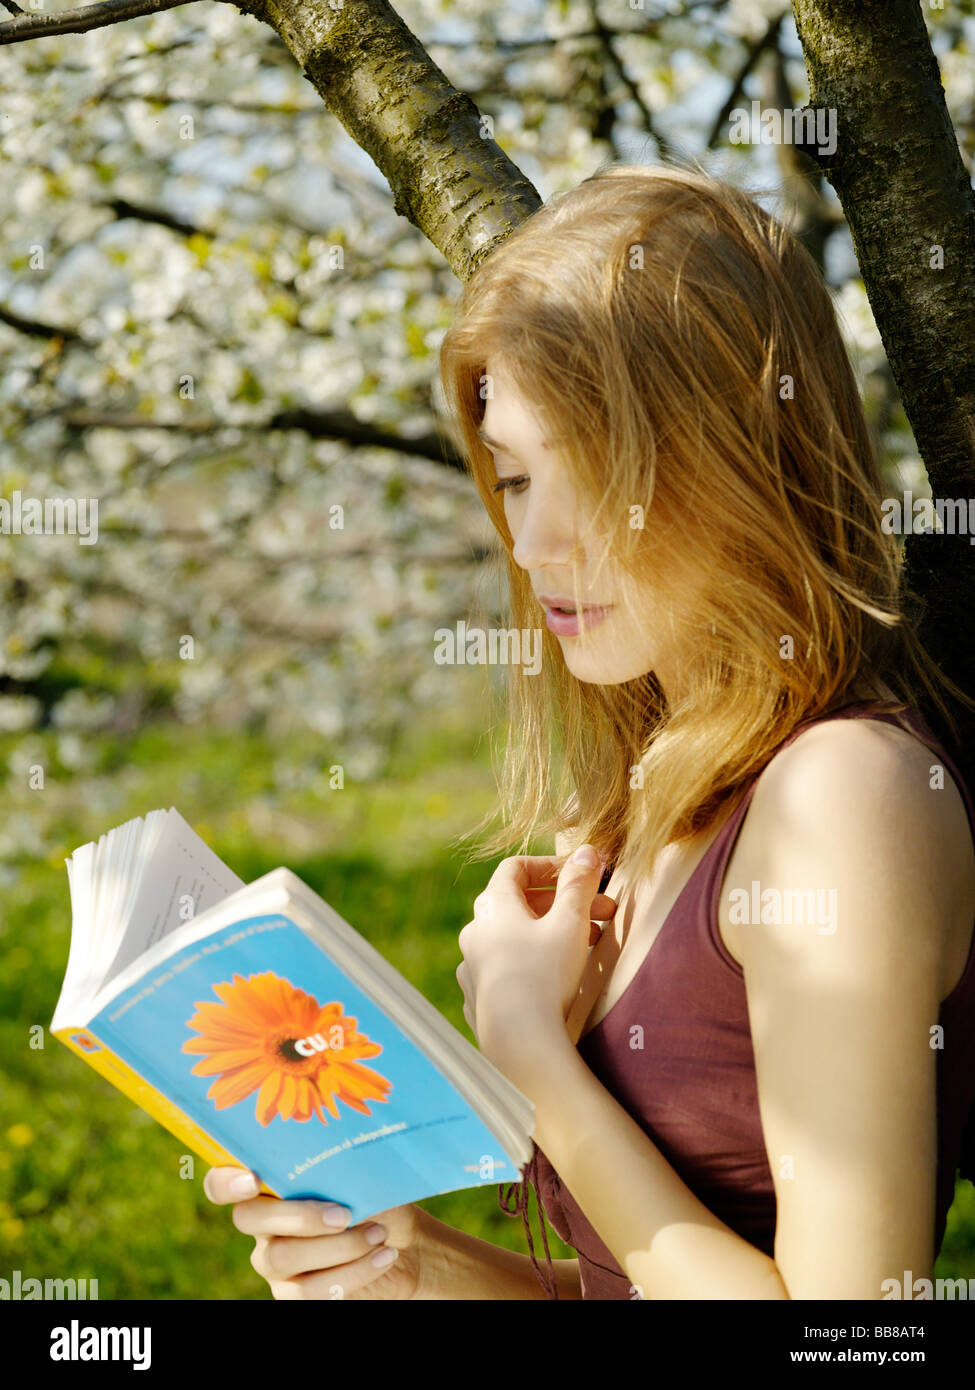 1253166 personnes portrait d'une femme 25 30 ans blonde adultes tenir arbre fleur de couverture de livre de lecture amotions mime étonnement surpris inte Banque D'Images